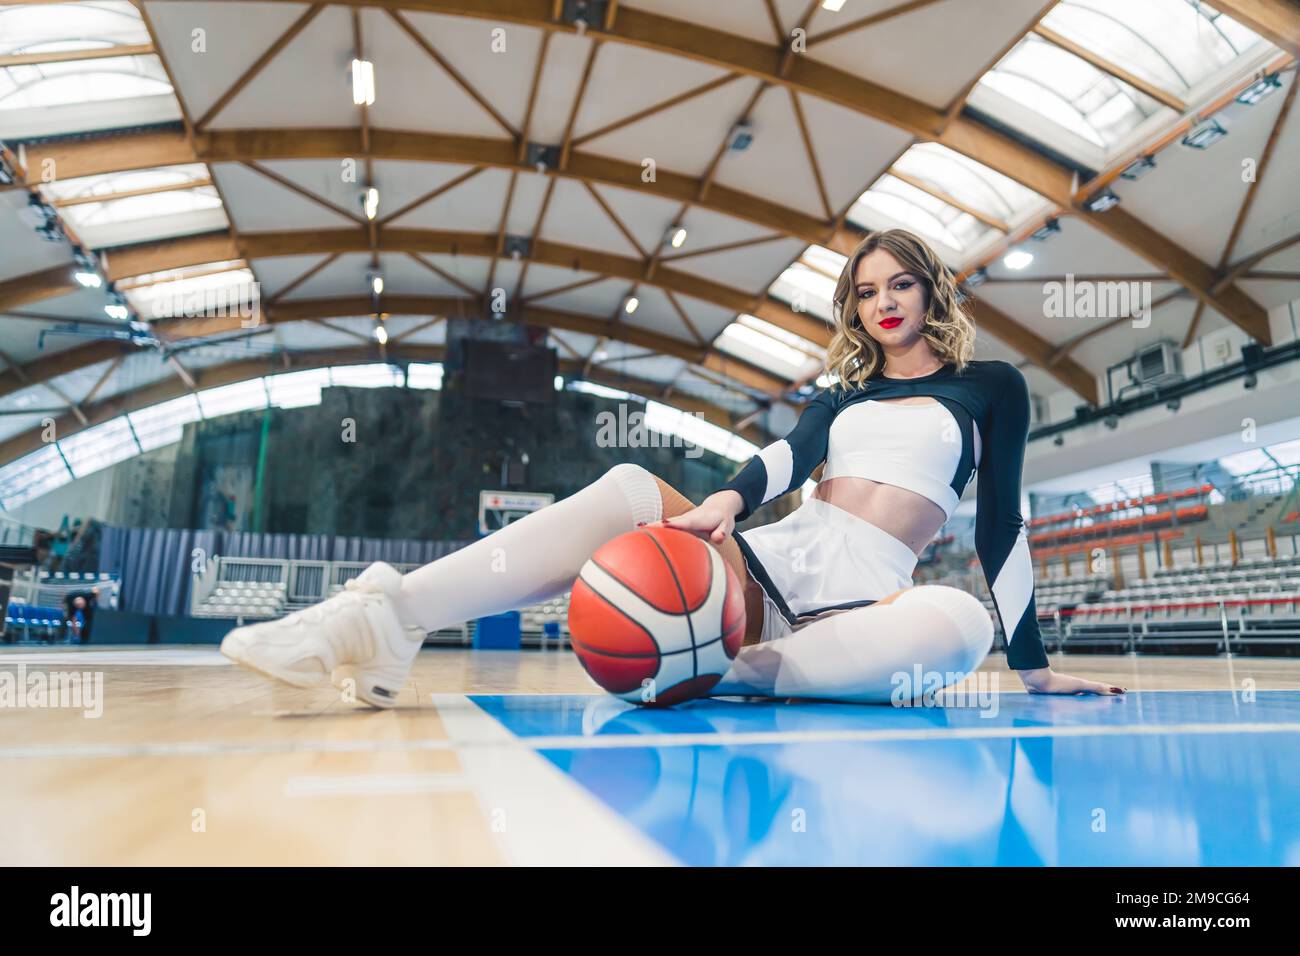 Tiro completo de ángulo bajo de una animadora sentada en el suelo con un baloncesto. Concepto deportivo. Foto de alta calidad Foto de stock